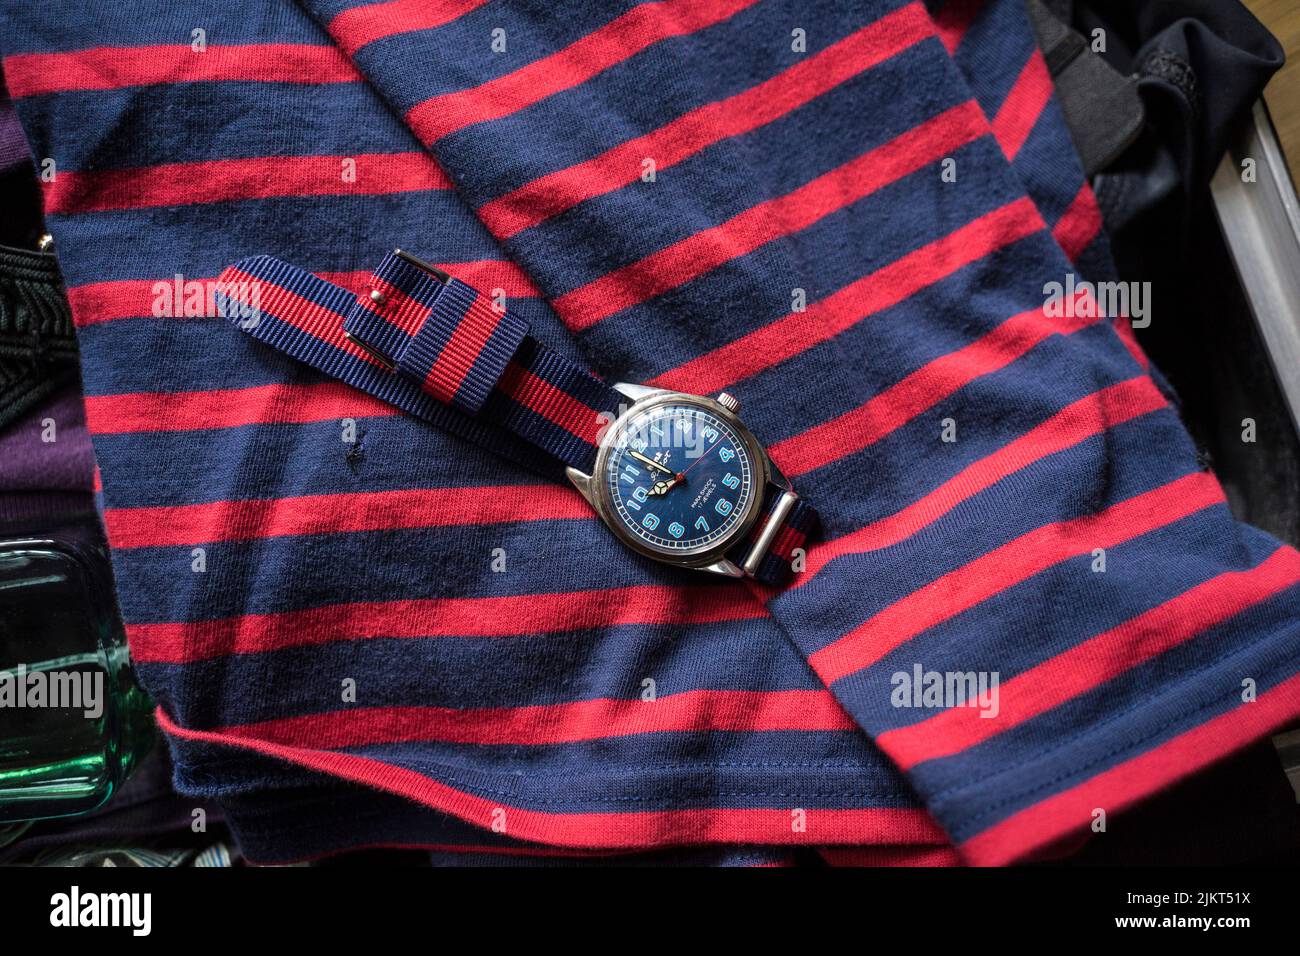 Camisa y reloj con patrón marítimo Foto de stock